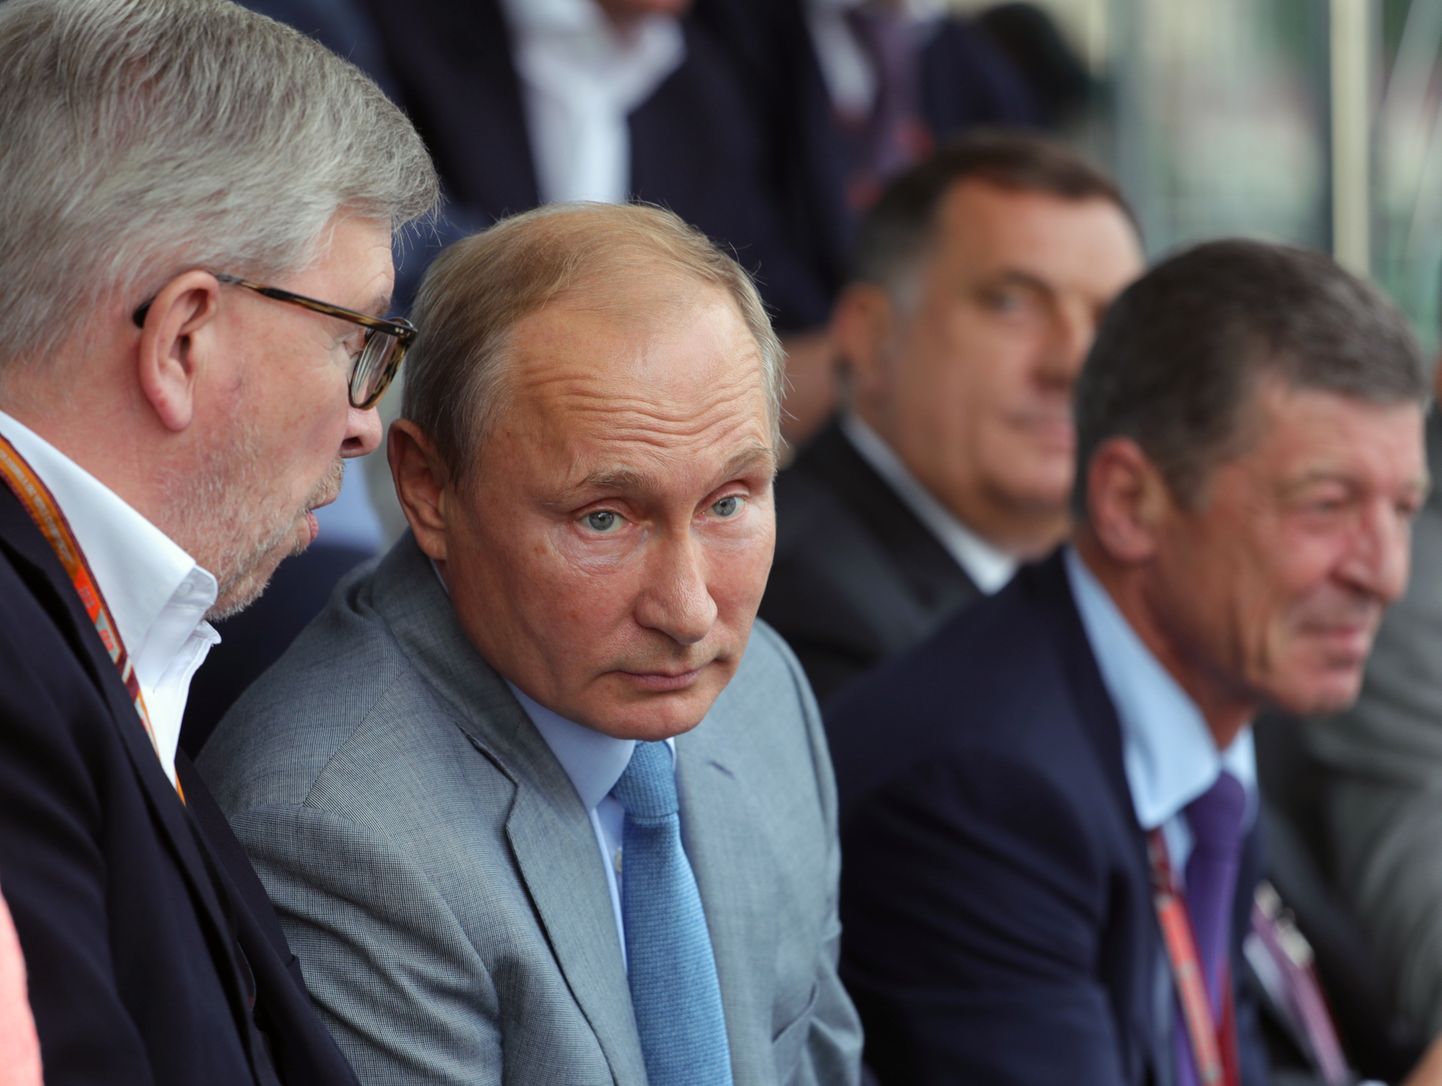 F1-sarja üks juhte, Ross Brawn rääkimas Venemaa presidendi Vladimir Putiniga. Võistlusrajal toimuvat jälgib asepeaminister Dmitri Kozak.